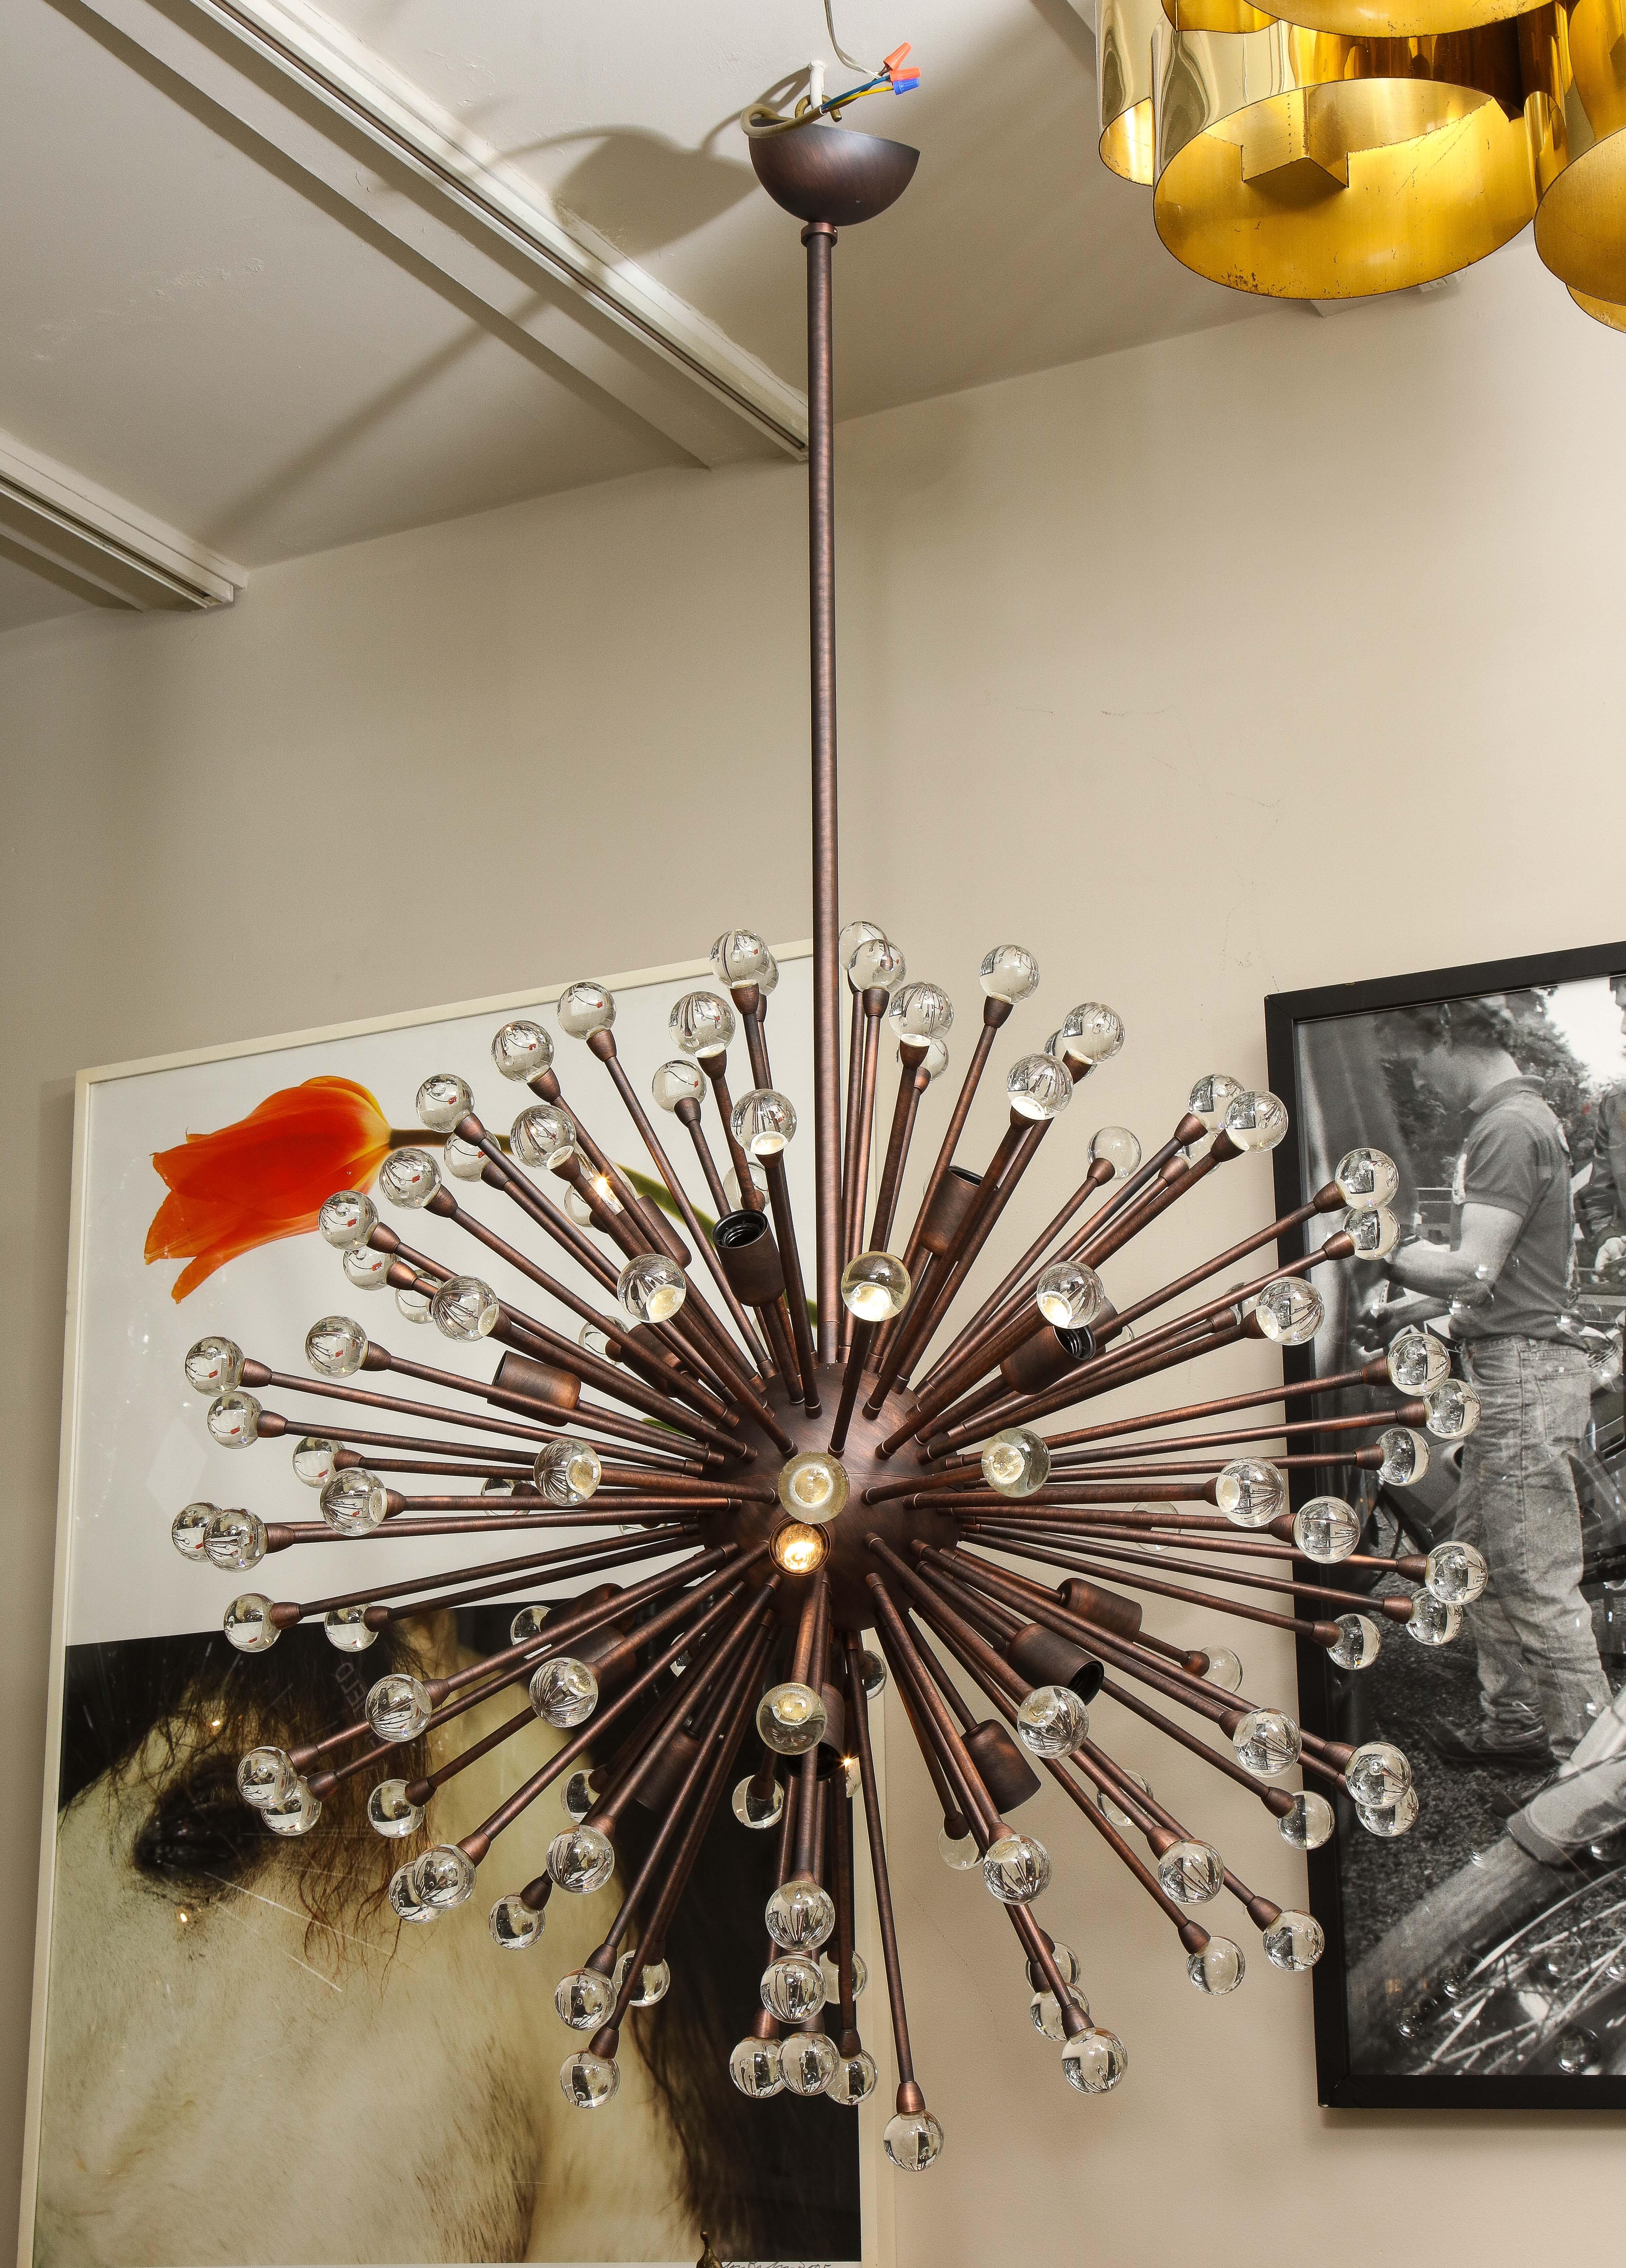 Lustre Sputnik à boules en verre de Murano réalisé sur mesure en bronze huilé. Le lustre dispose de 18 douilles standard (E12) pour éclairer des boules de verre parfaitement rondes fabriquées à la main par les artisans verriers de Murano, en Italie.